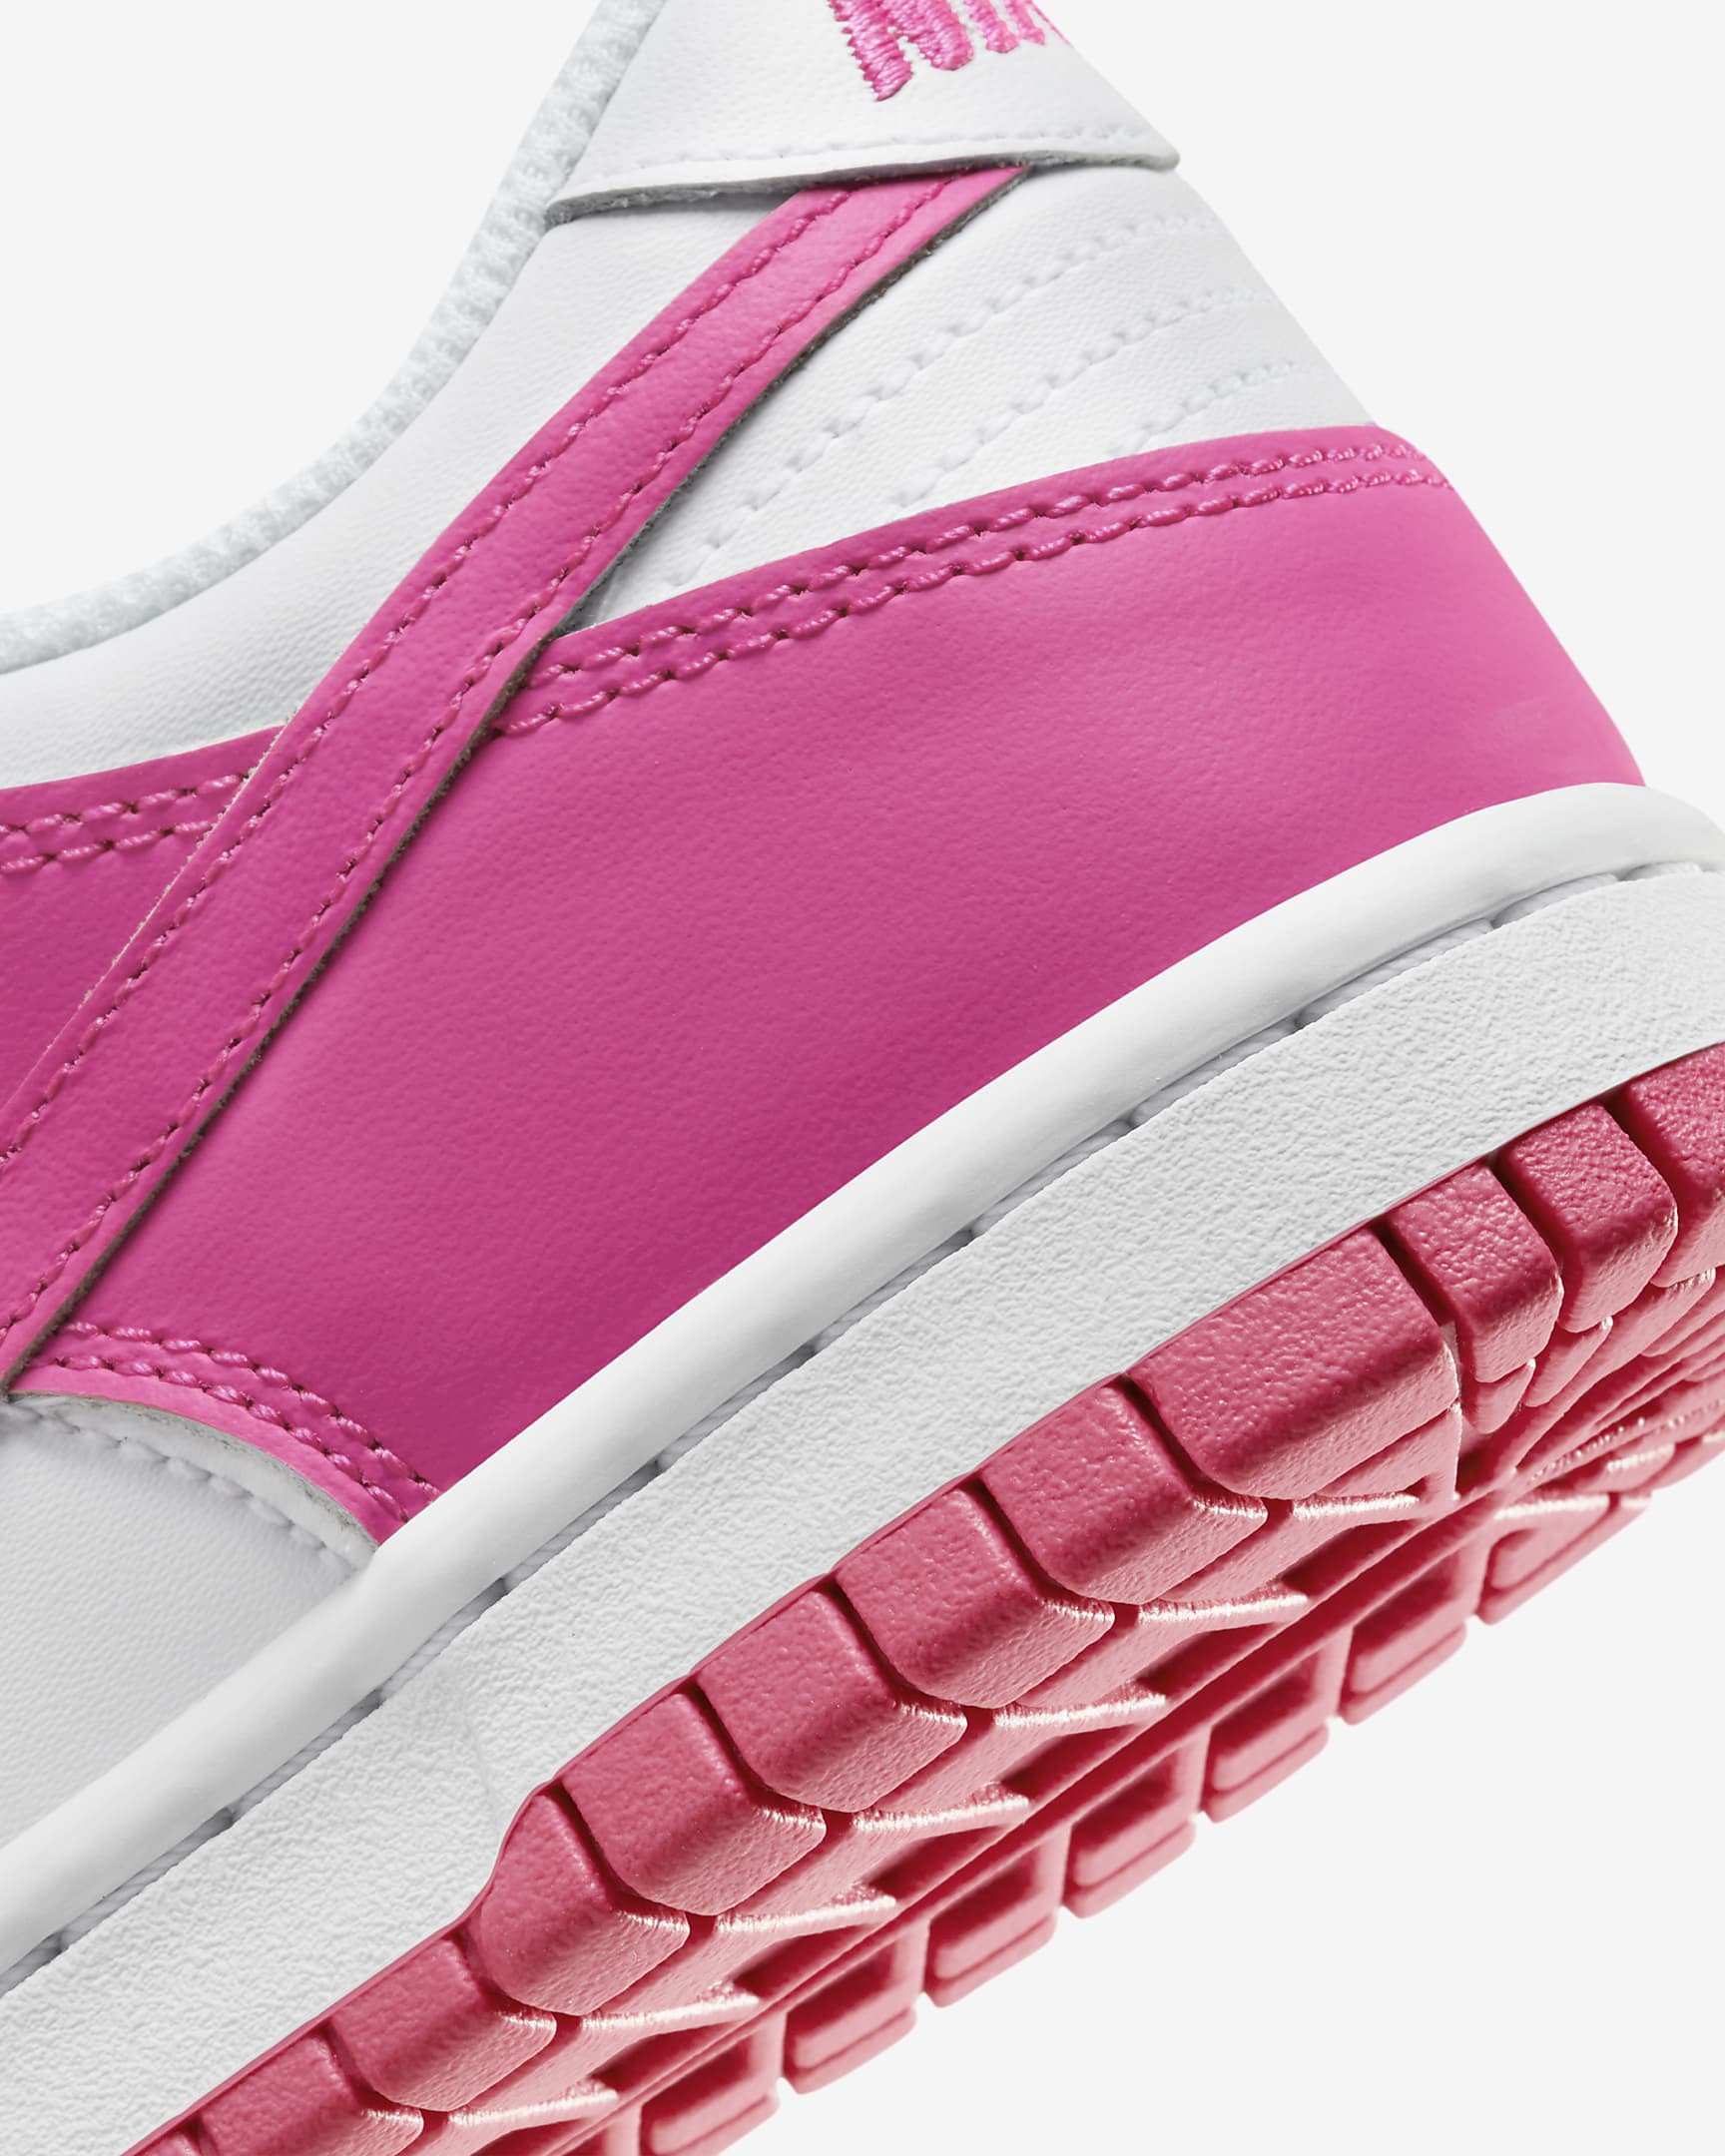 Bota Nike Dunk Low pro větší děti - Bílá/Růžová/Laser Fuchsia